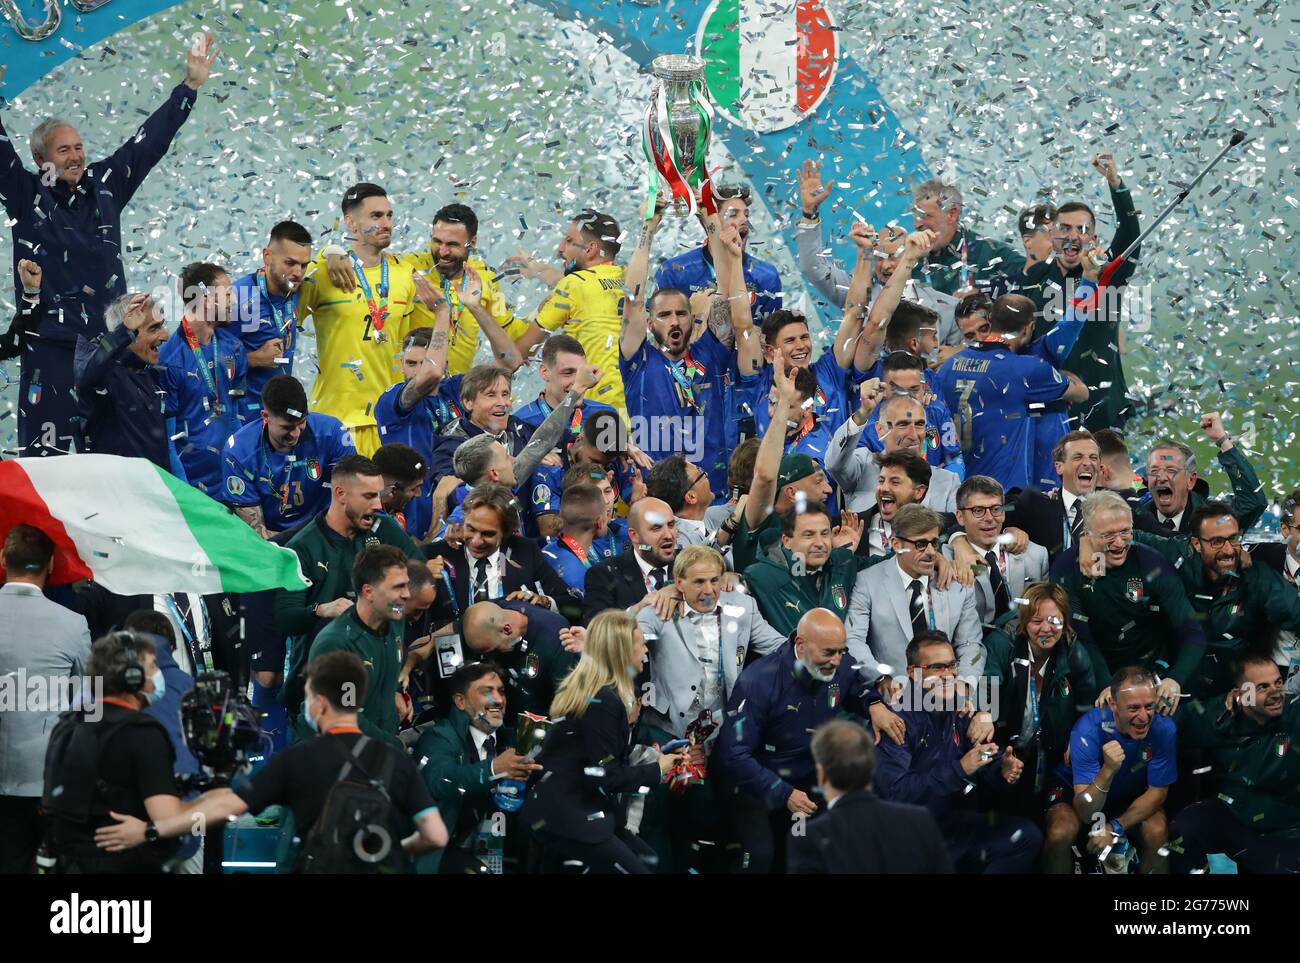 Londres, Inglaterra, 11th de julio de 2021. Italia celebra ganar el trofeo durante la final de la UEFA EURO 2020 en el estadio de Wembley, Londres. El crédito de la foto debe decir: David Klein / Sportage Crédito: Sportage / Alamy Live News Foto de stock